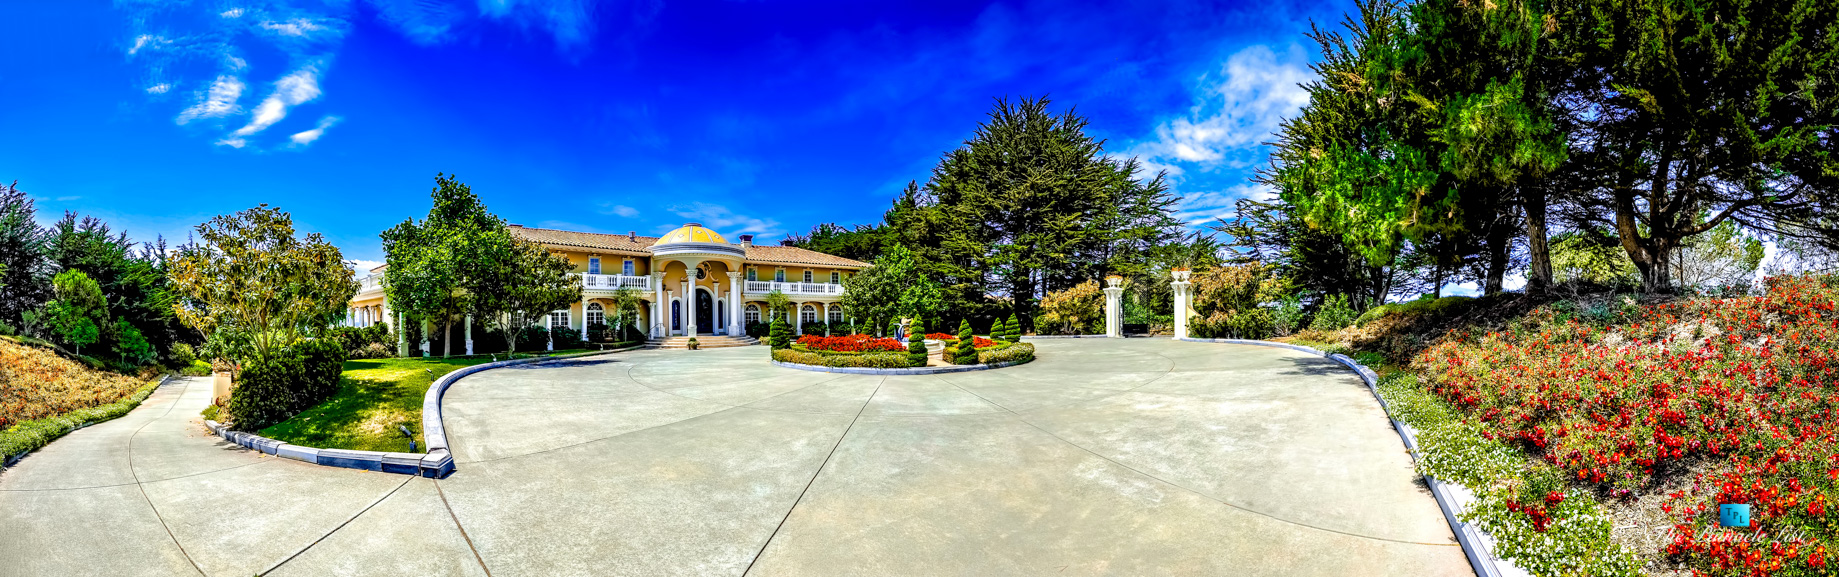 Pano - Villa Viscaya Estate - 112 Holiday Dr, La Selva Beach, CA, USA